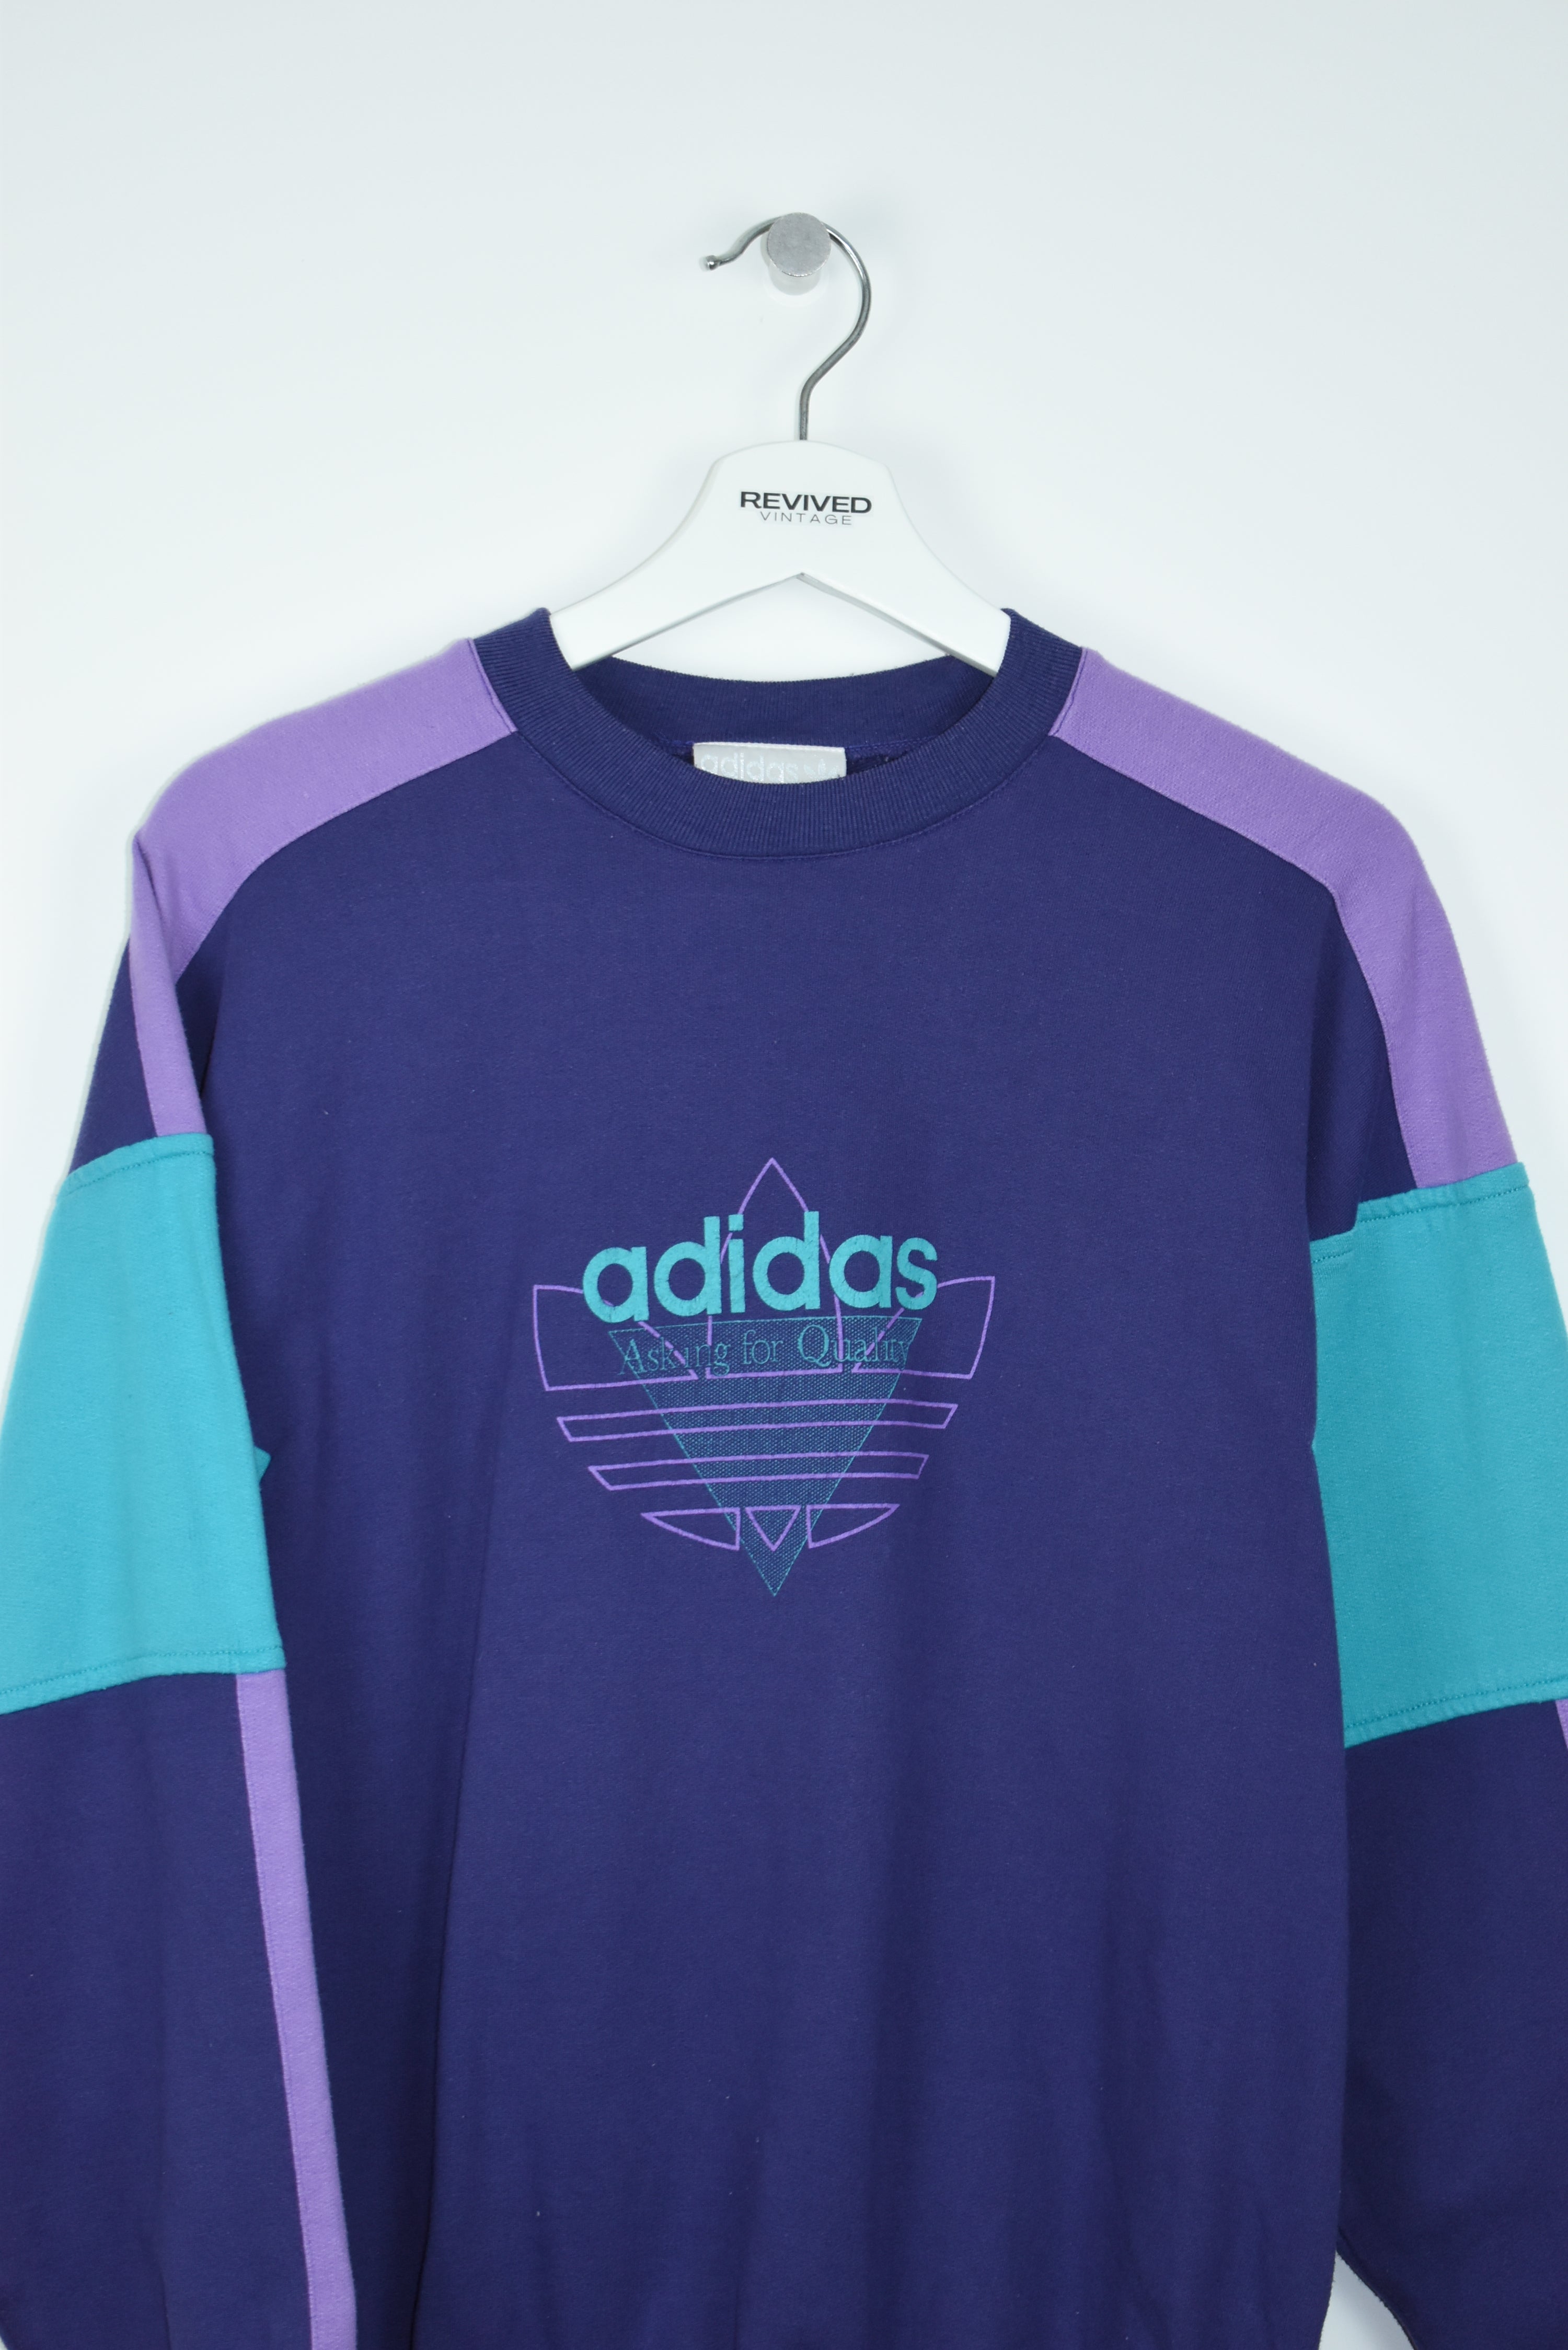 Vintage Adidas 80S Print Sweatshirt Medium